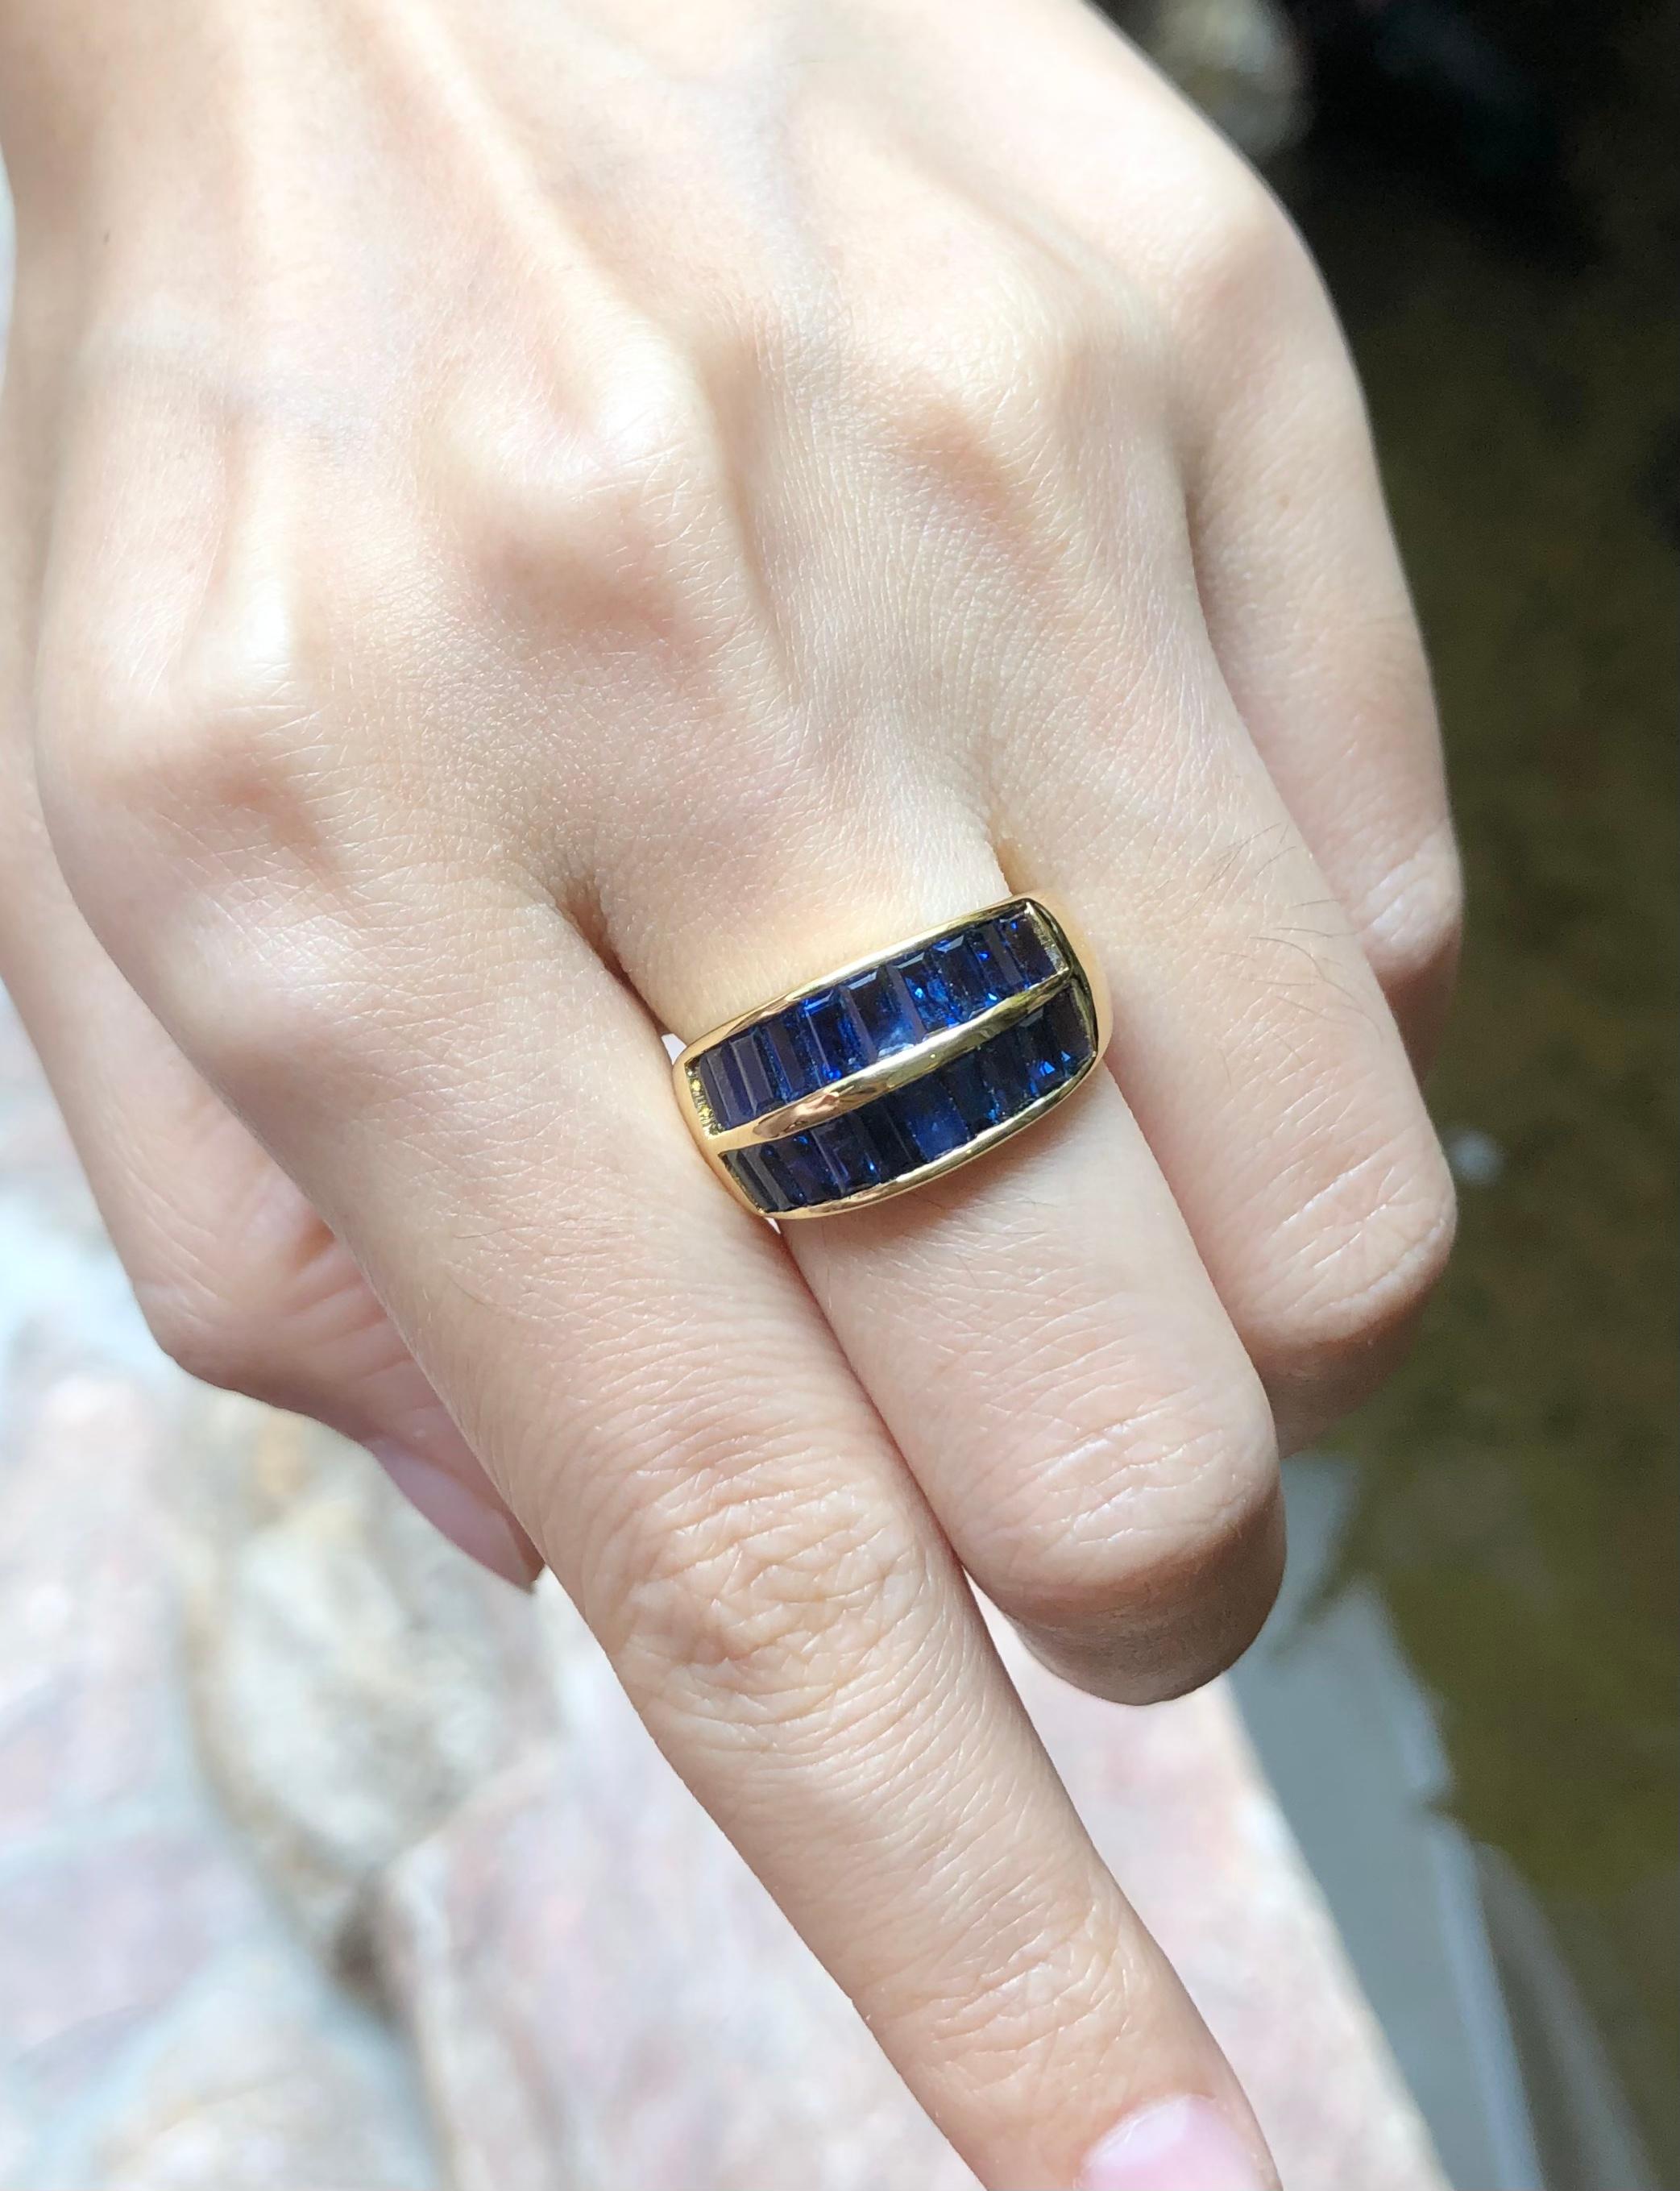 Bague en saphir bleu 4,48 carats sertie d'or 18 carats

Largeur :  1,8 cm 
Longueur : 1,0 cm
Taille de l'anneau : 55
Poids total : 7,15 grammes

